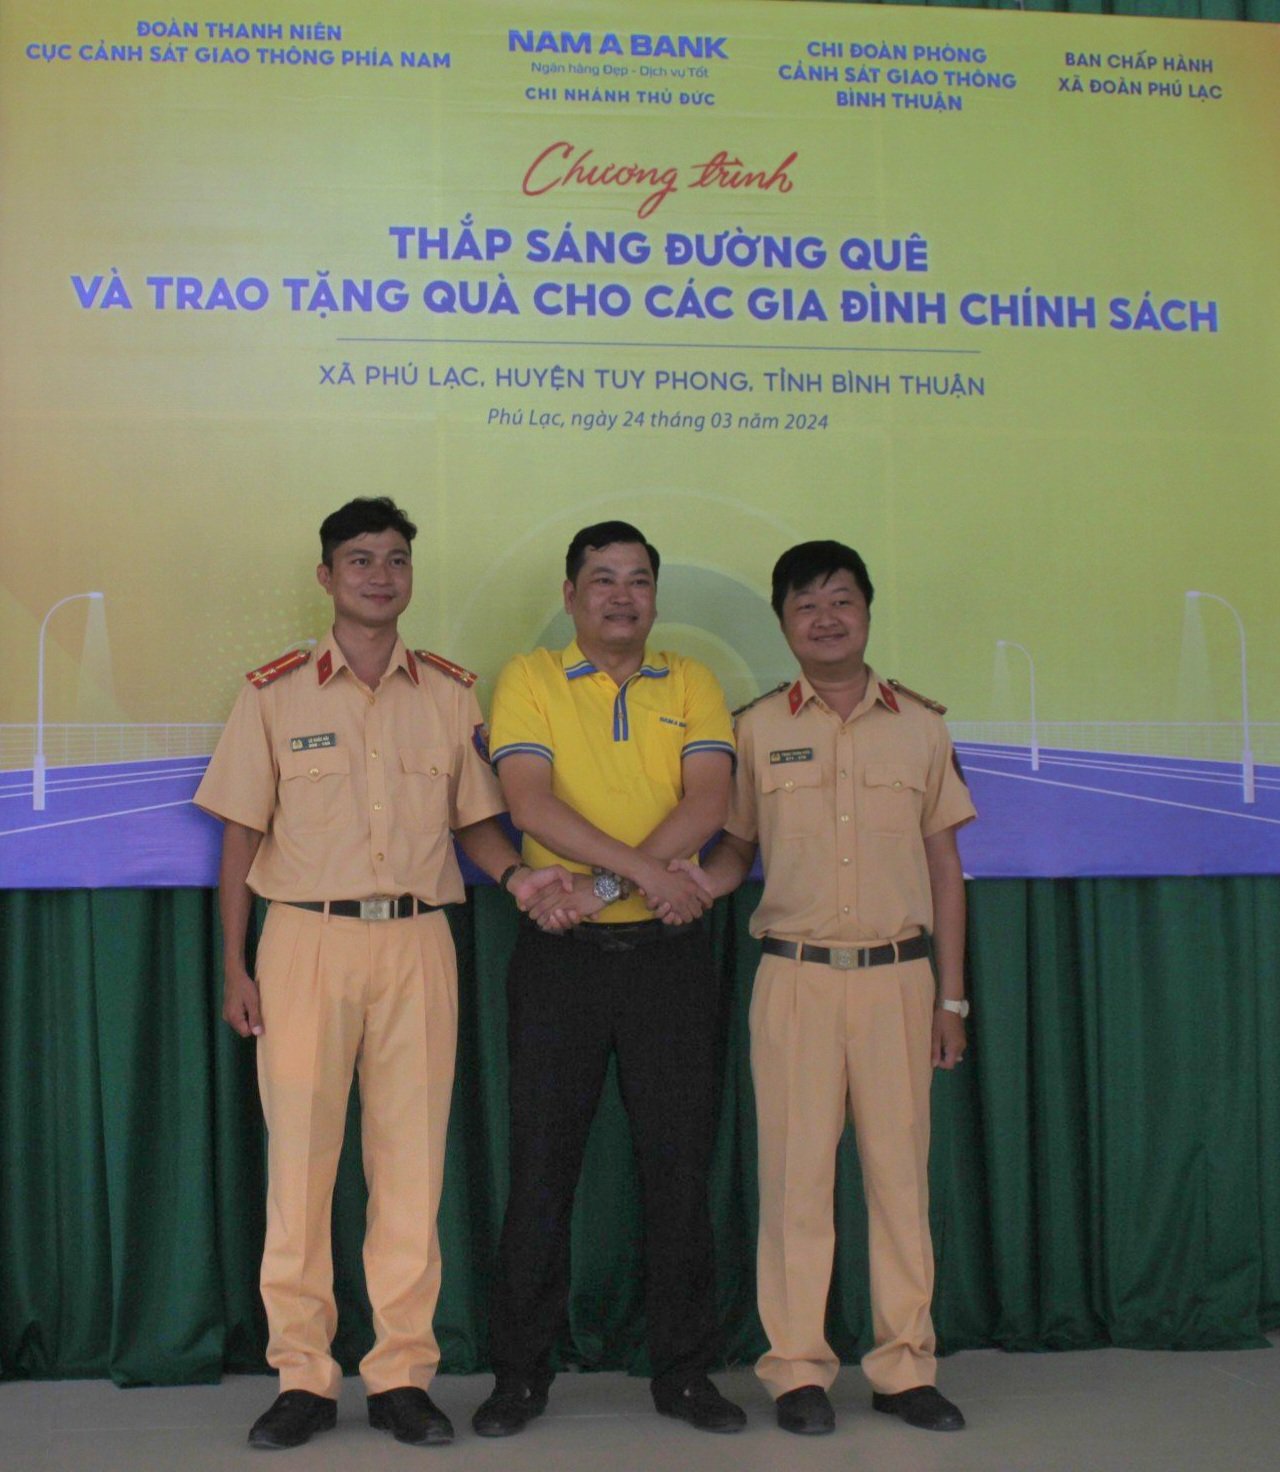 Cục CSGT phối hợp với Phòng CSGT Bình Thuận và Nam Á Bank Chi nhánh Thủ Đức trao tặng quà cho các gia đình chính sách có hoàn cảnh khó khăn trên địa bàn xã Phú Lạc